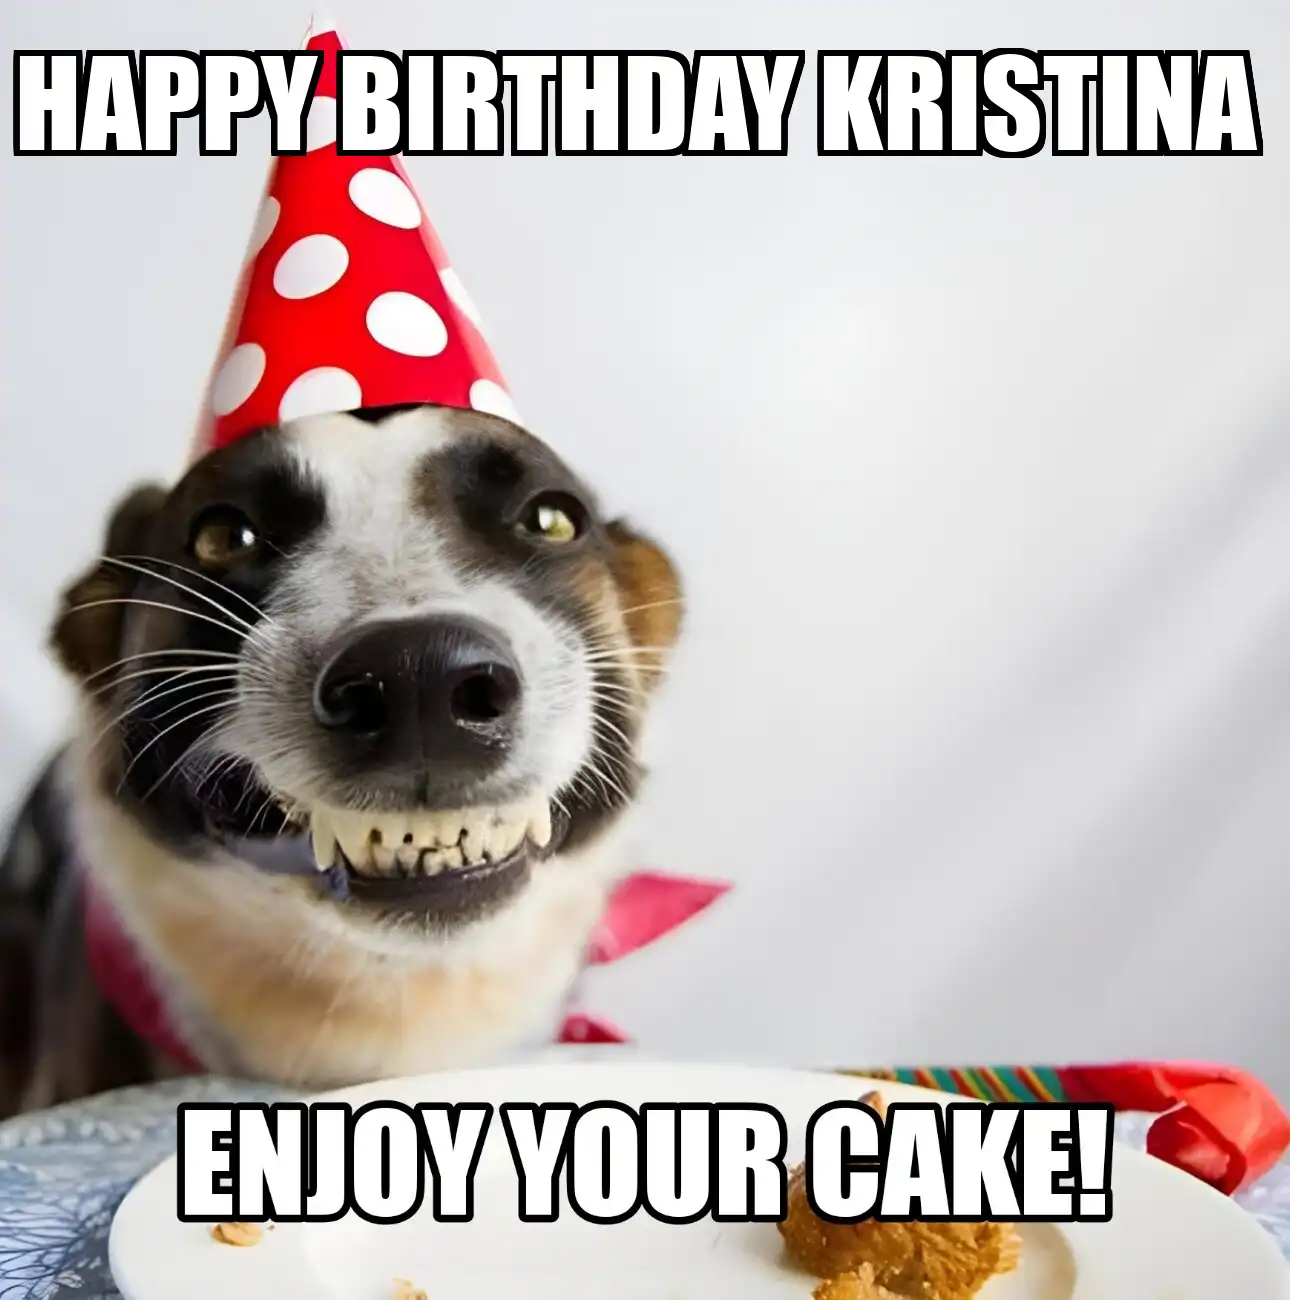 Happy Birthday Kristina Enjoy Your Cake Dog Meme